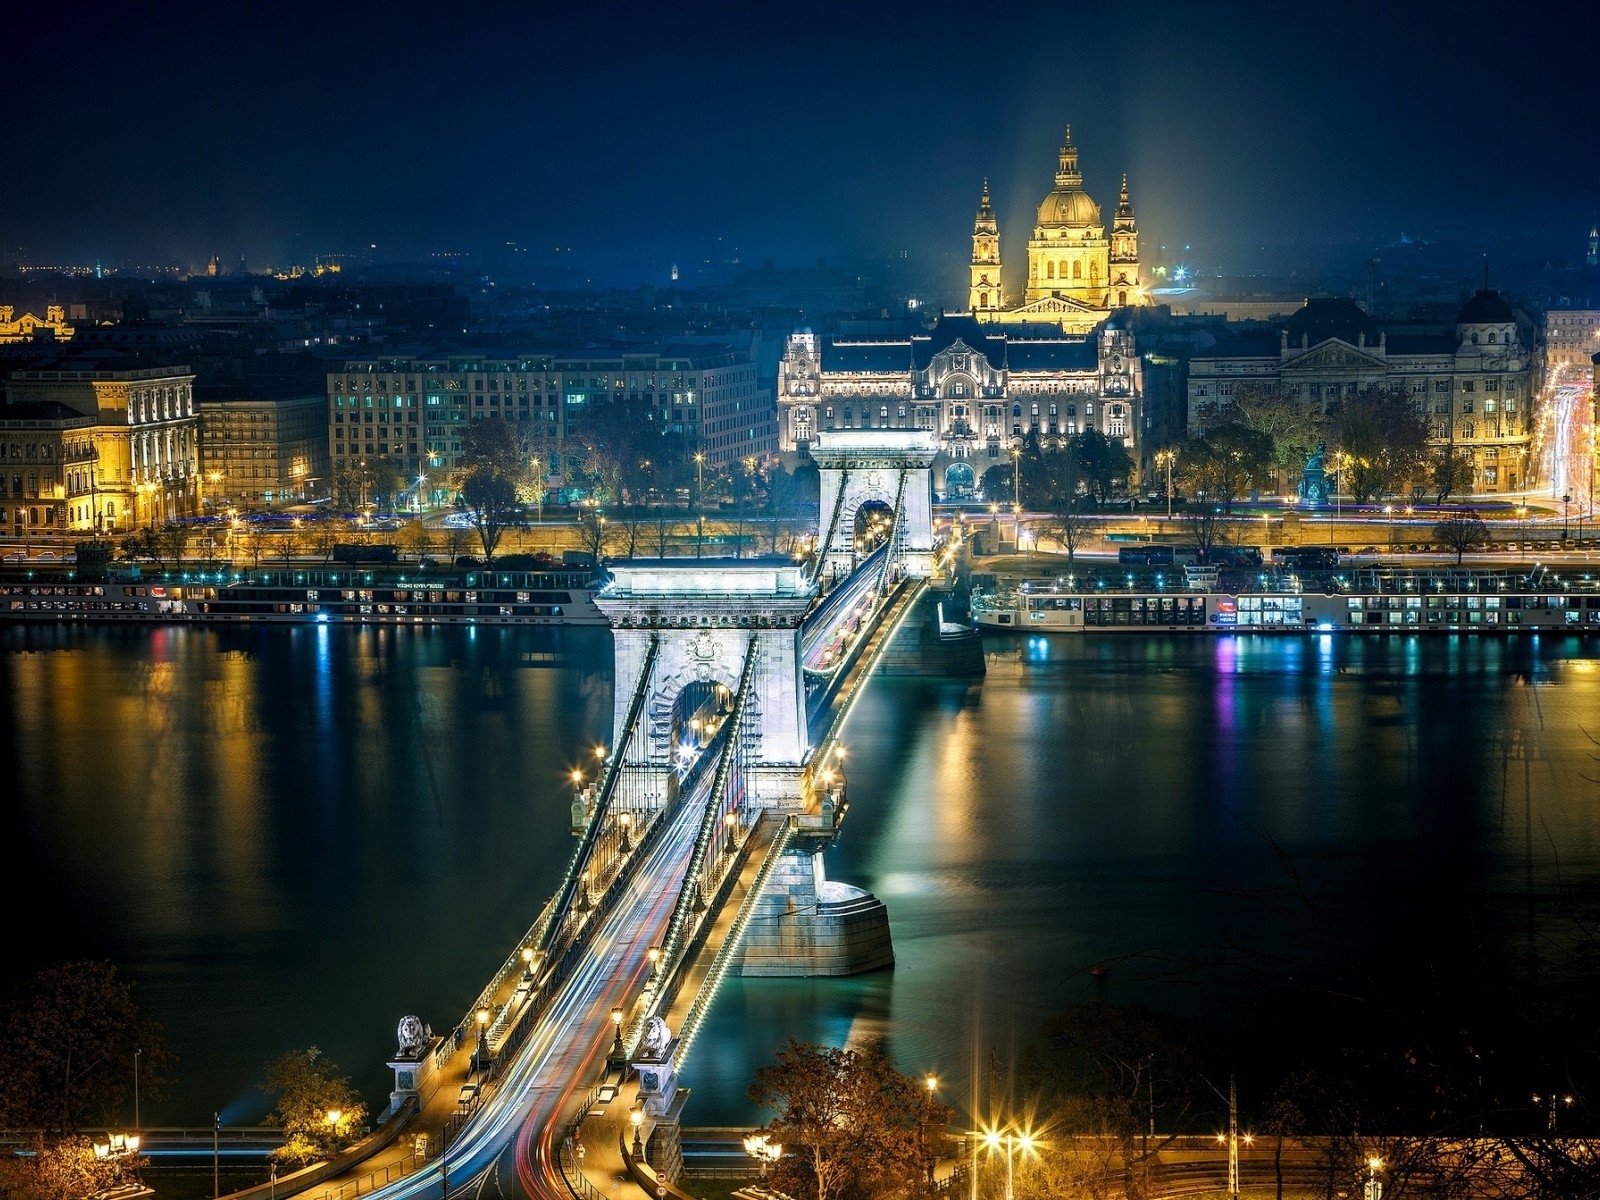 Szechenyi Chain Bridge Budapest for 1600 x 1200 resolution